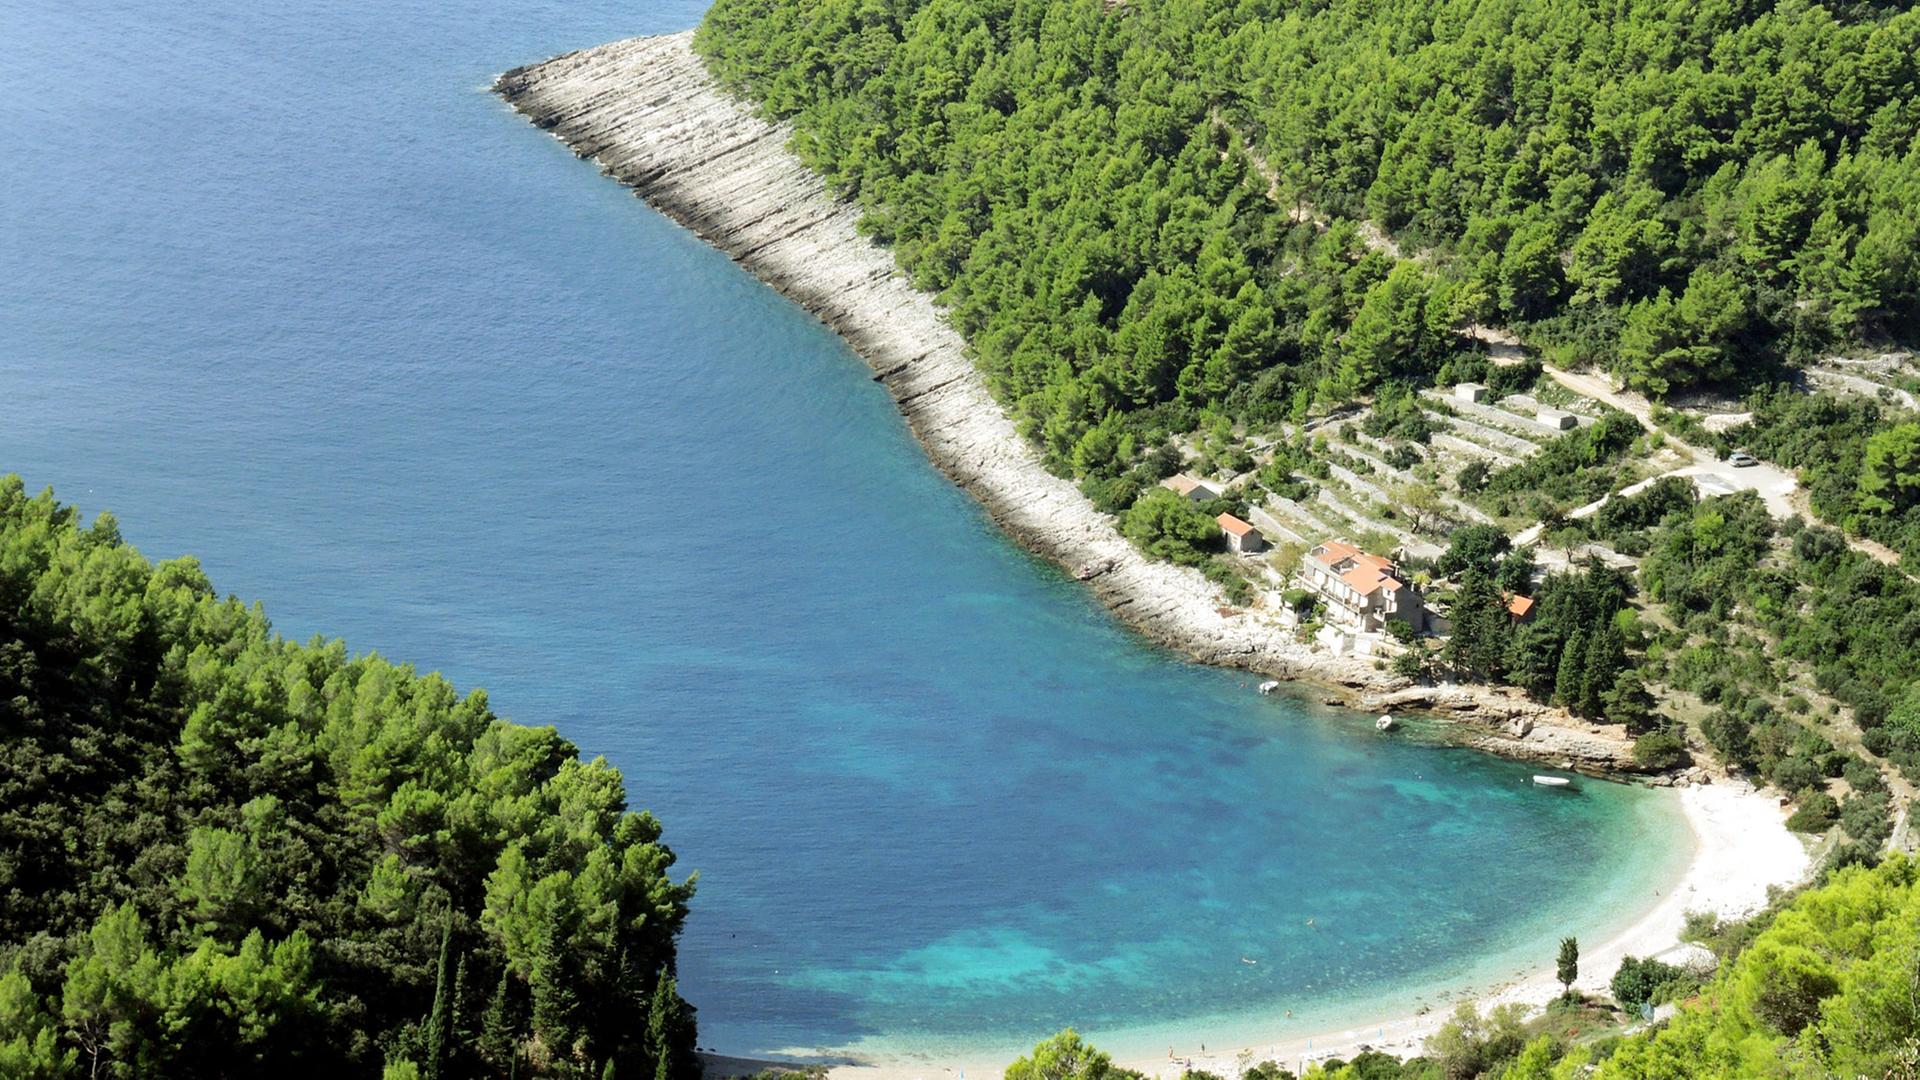 Blick auf den Strand Pupnatska Luka auf der kroatischen Insel Korcula. Bild vom 26.09.2014.